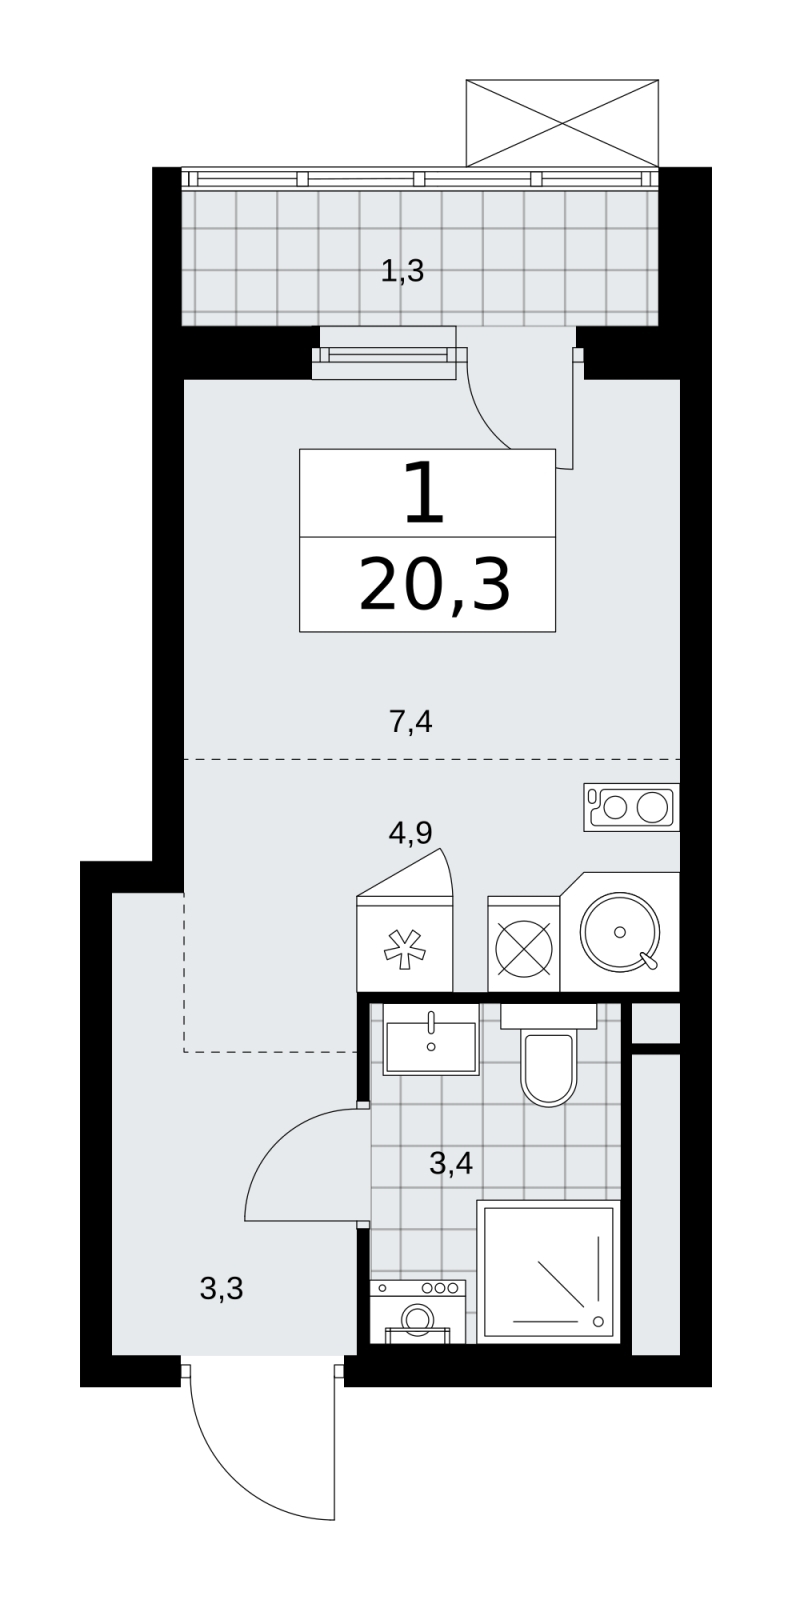 Продается просторная однокомнатная квартира-студия в новом жилом комплексе, у метро